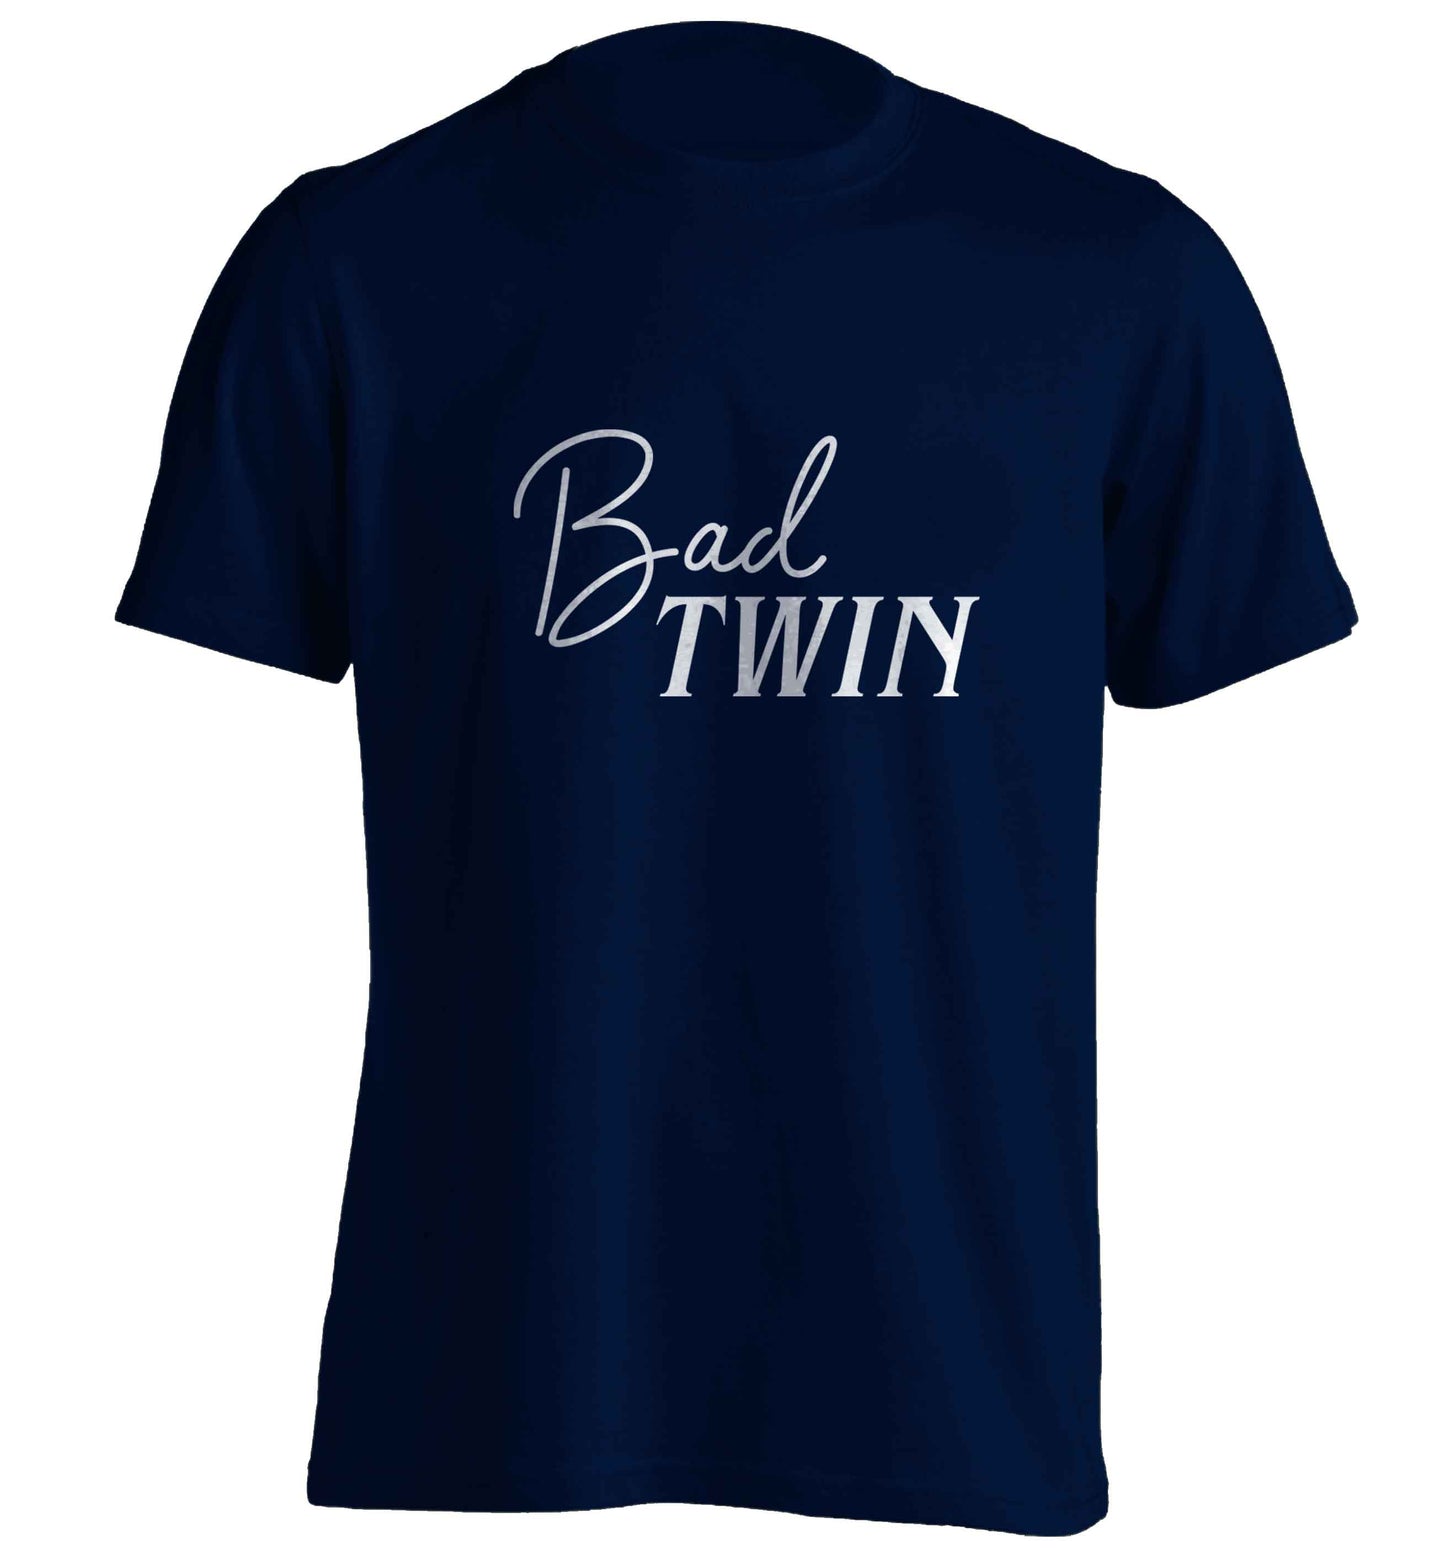 Bad twin adults unisex navy Tshirt 2XL